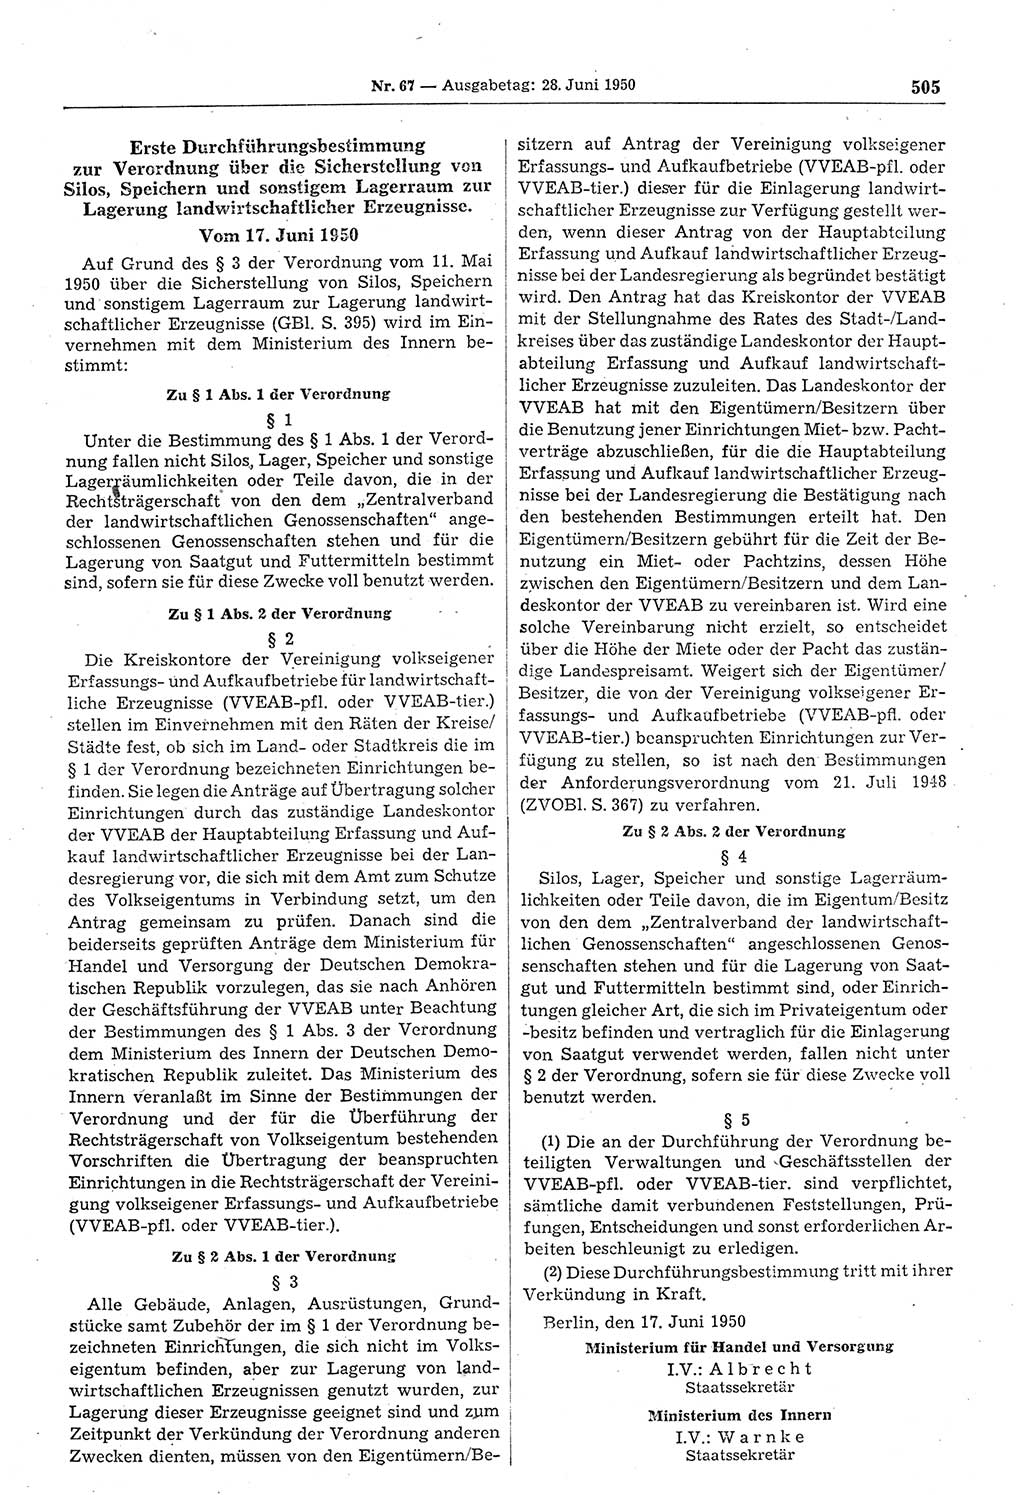 Gesetzblatt (GBl.) der Deutschen Demokratischen Republik (DDR) 1950, Seite 505 (GBl. DDR 1950, S. 505)